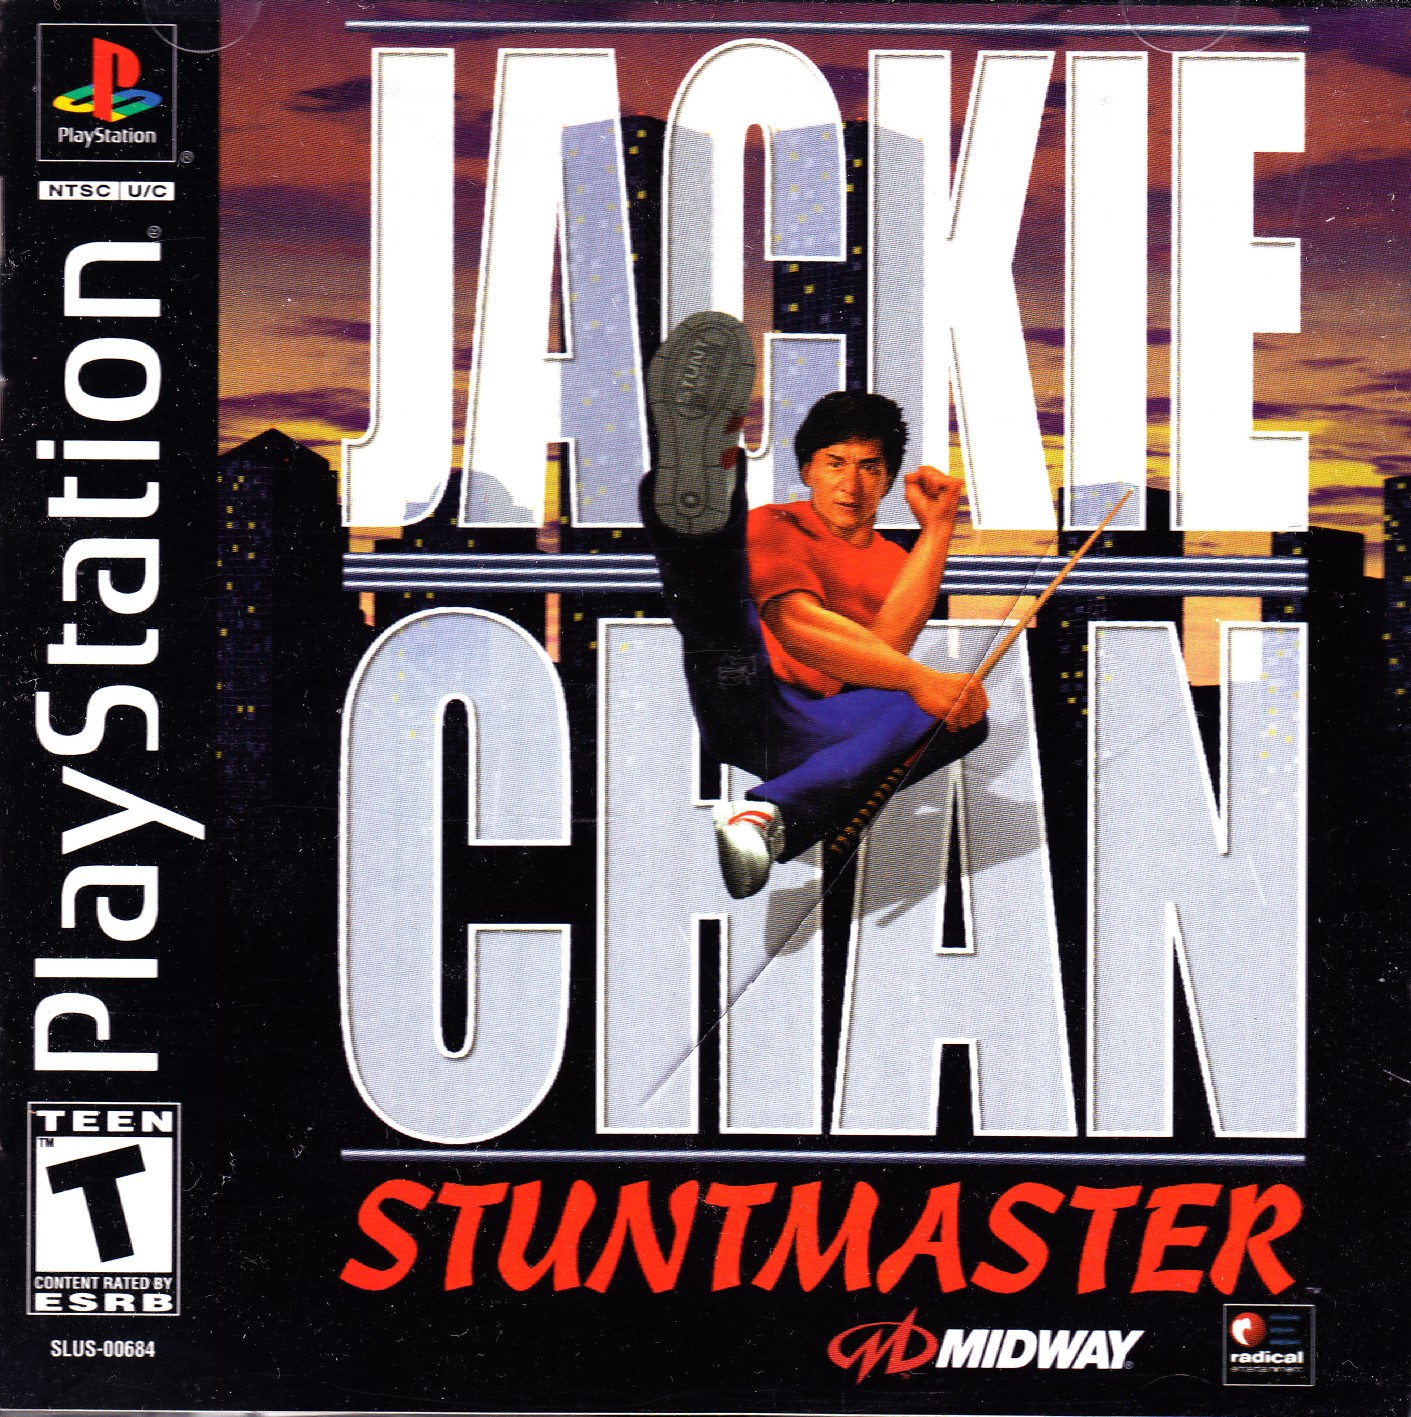 jackie-chan-stuntmaster-slus-00684.jpg